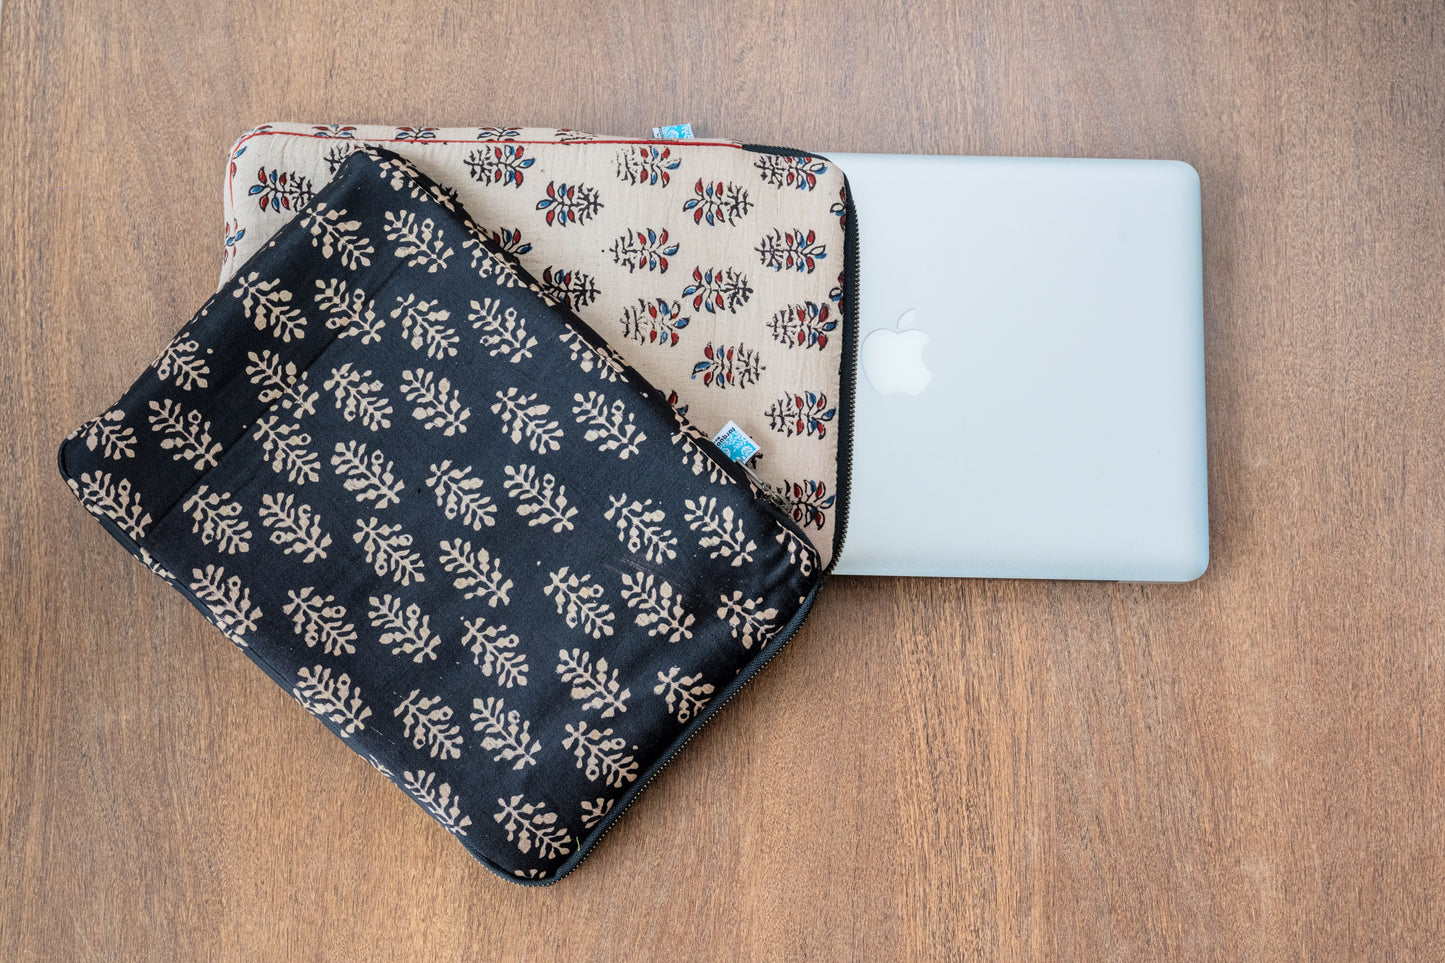 Black ajrakh fabric laptop sleeve, Apple MacBook sleeve